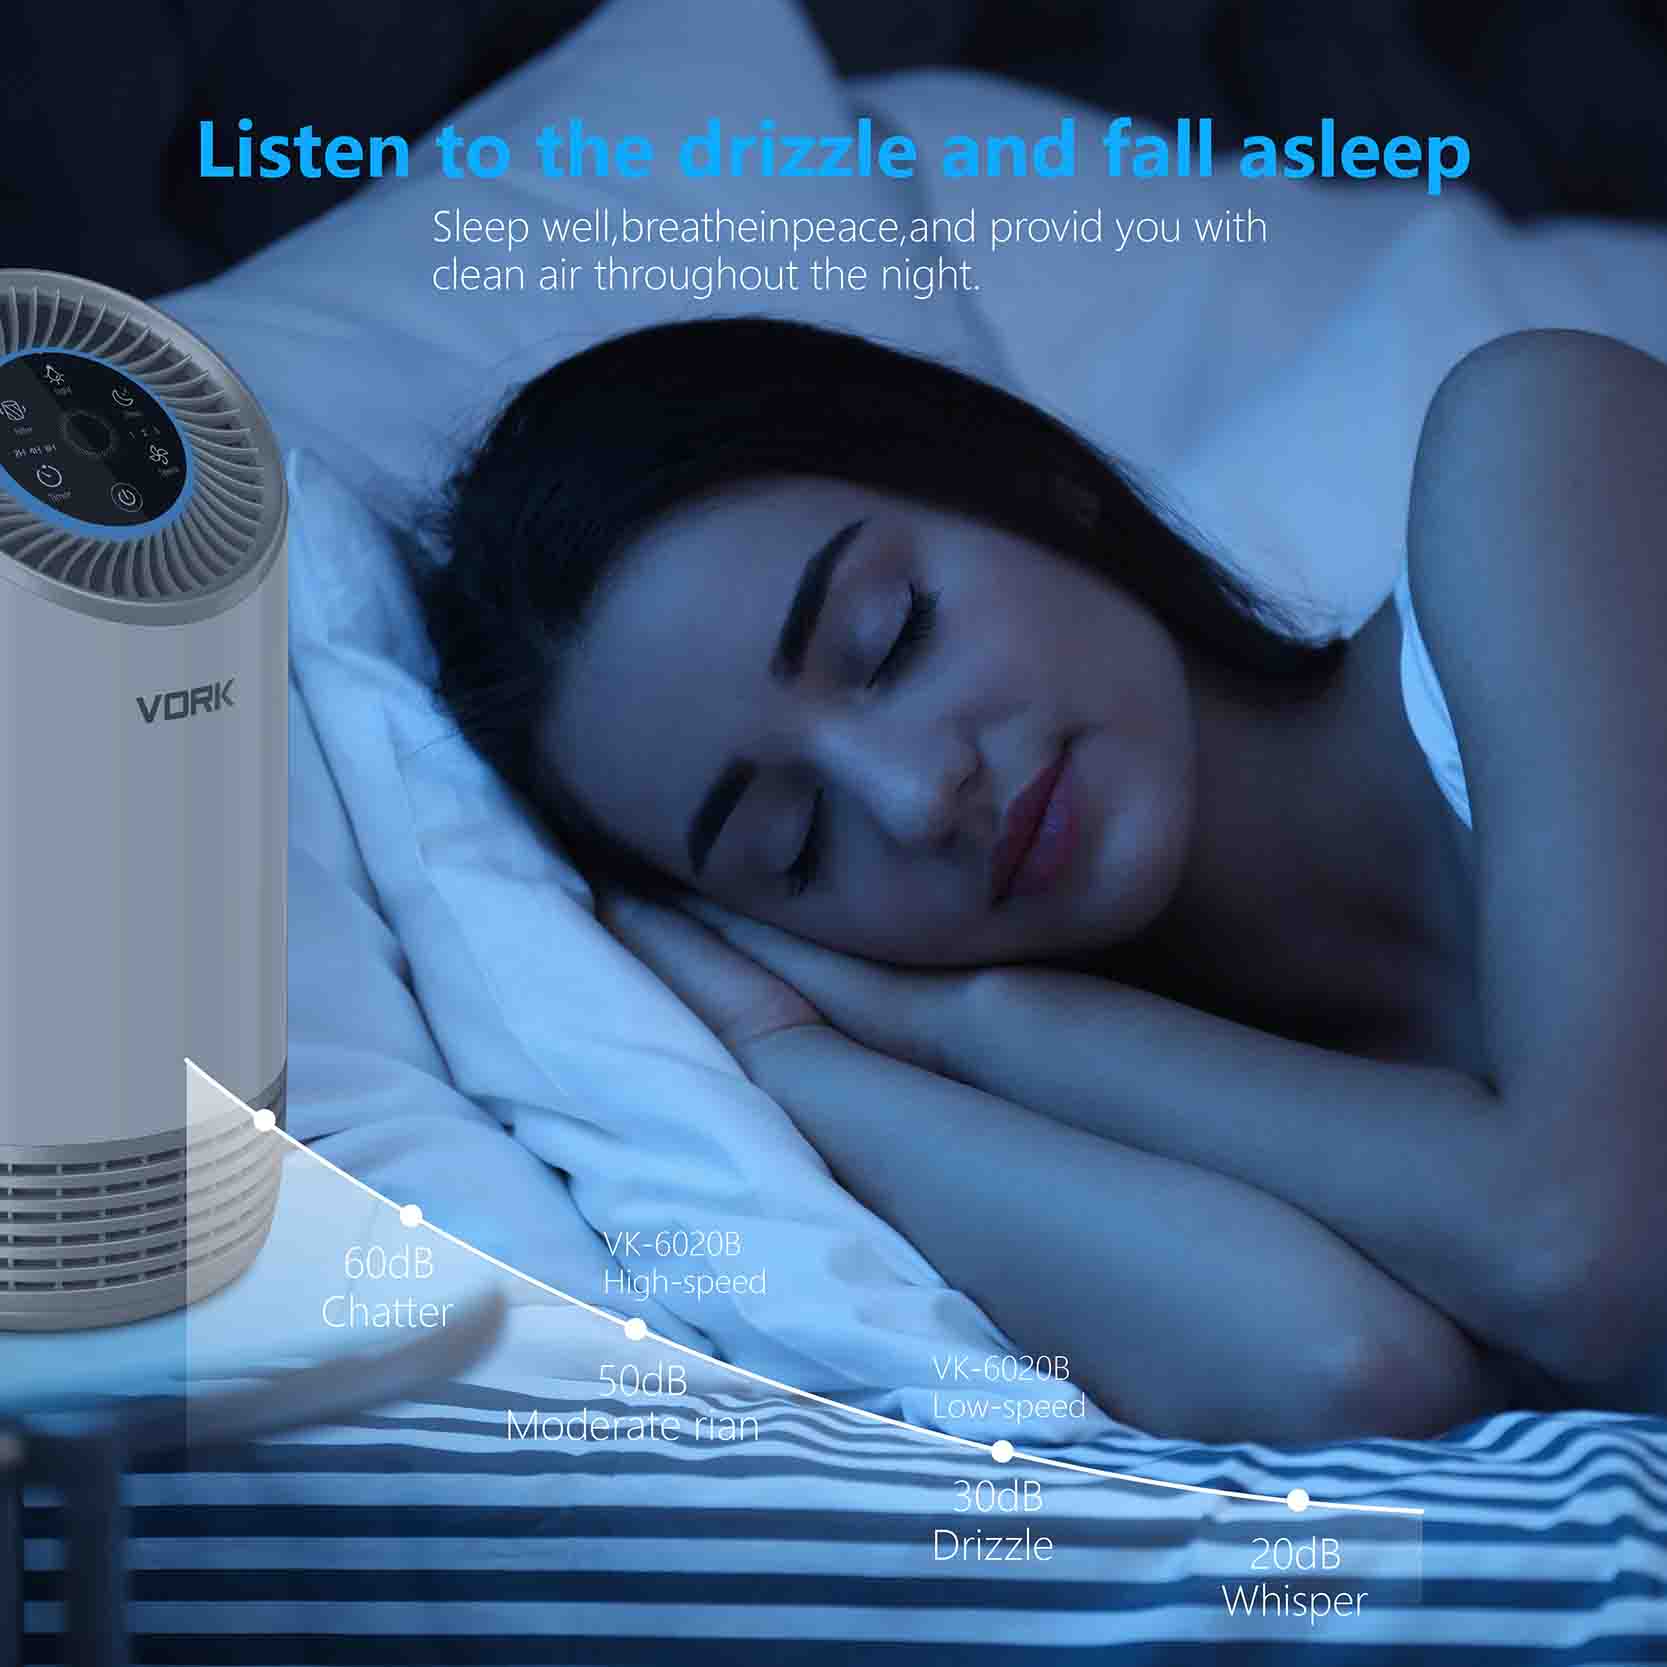 Sleep air purifier